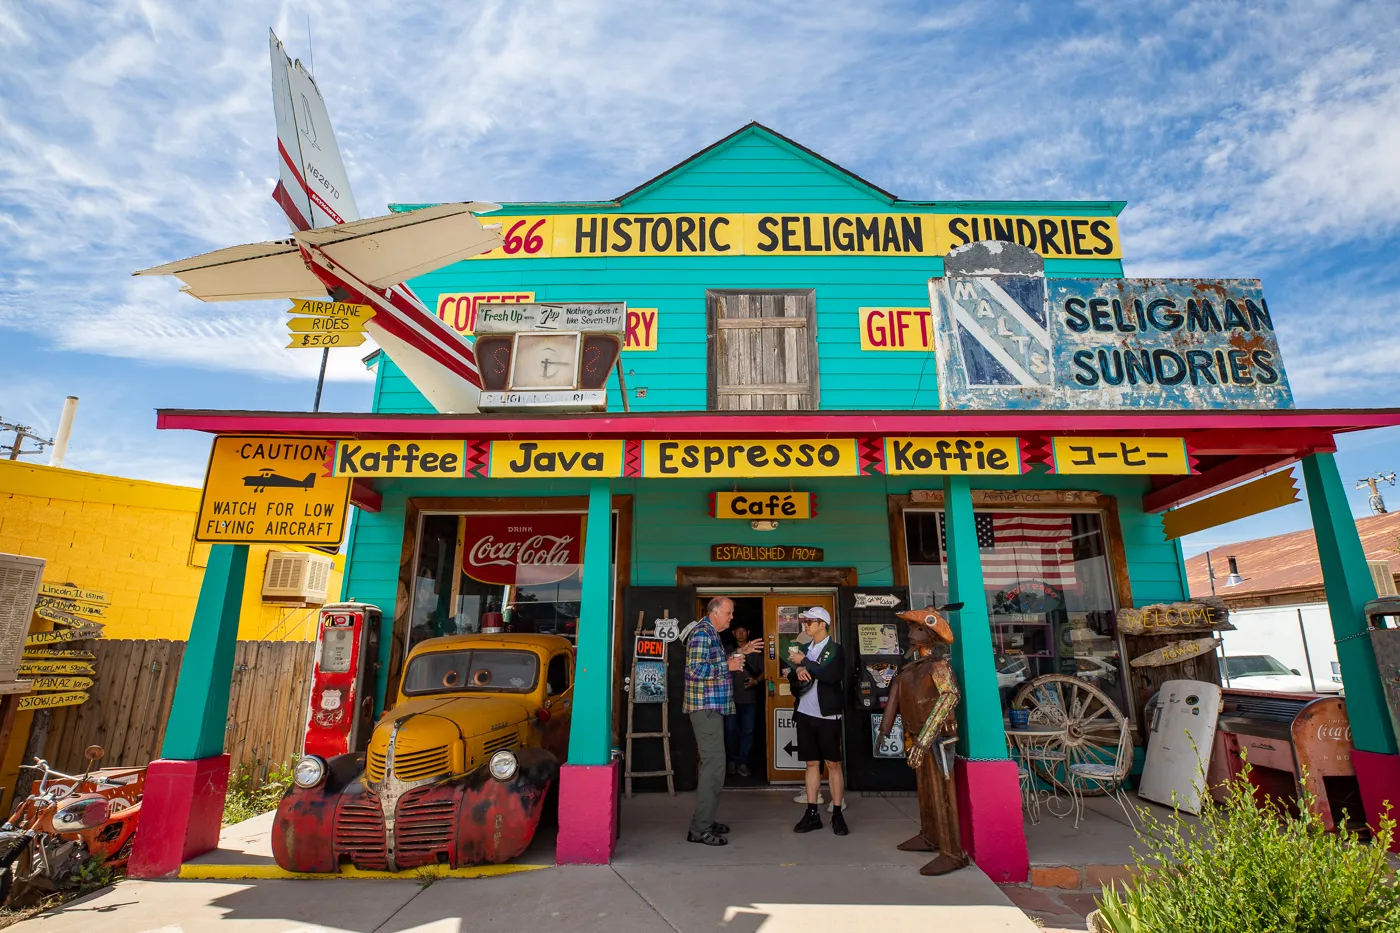 Historic Seligman Sundries in Seligman, Arizona Route 66 Roadside Attraction